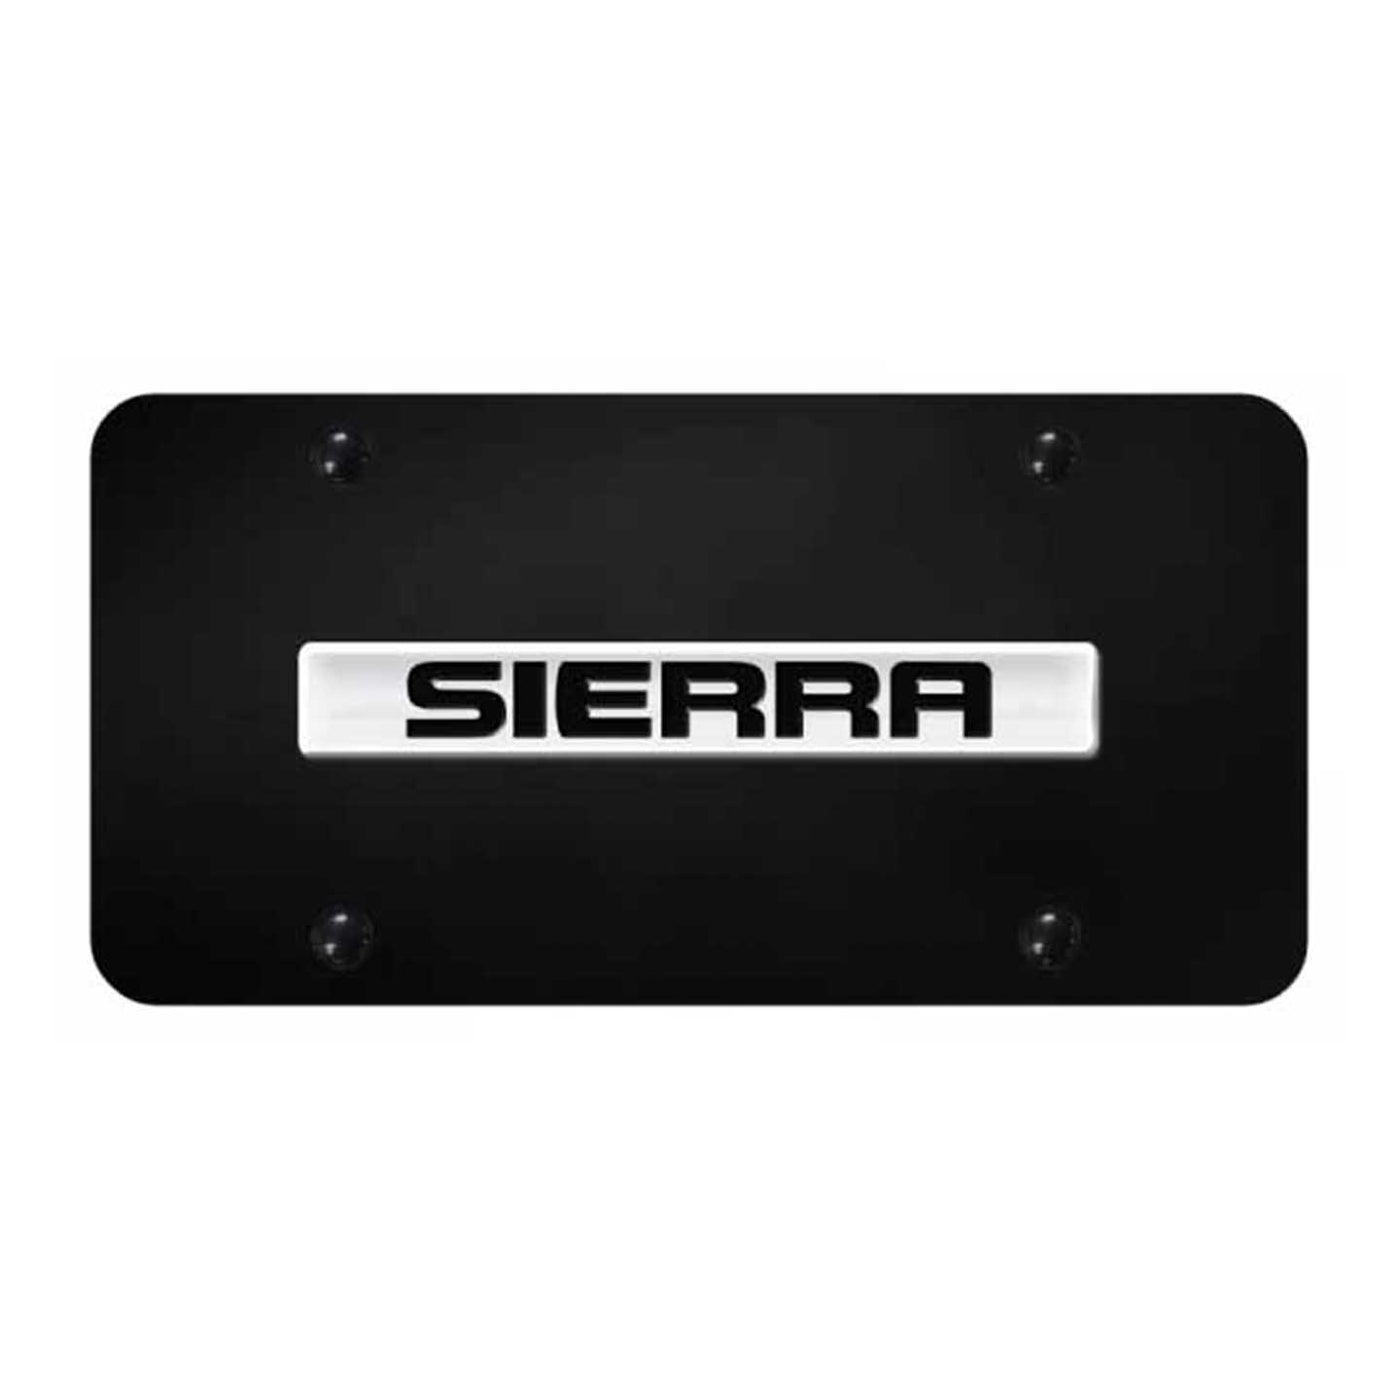 Sierra Name License Plate - Chrome on Black